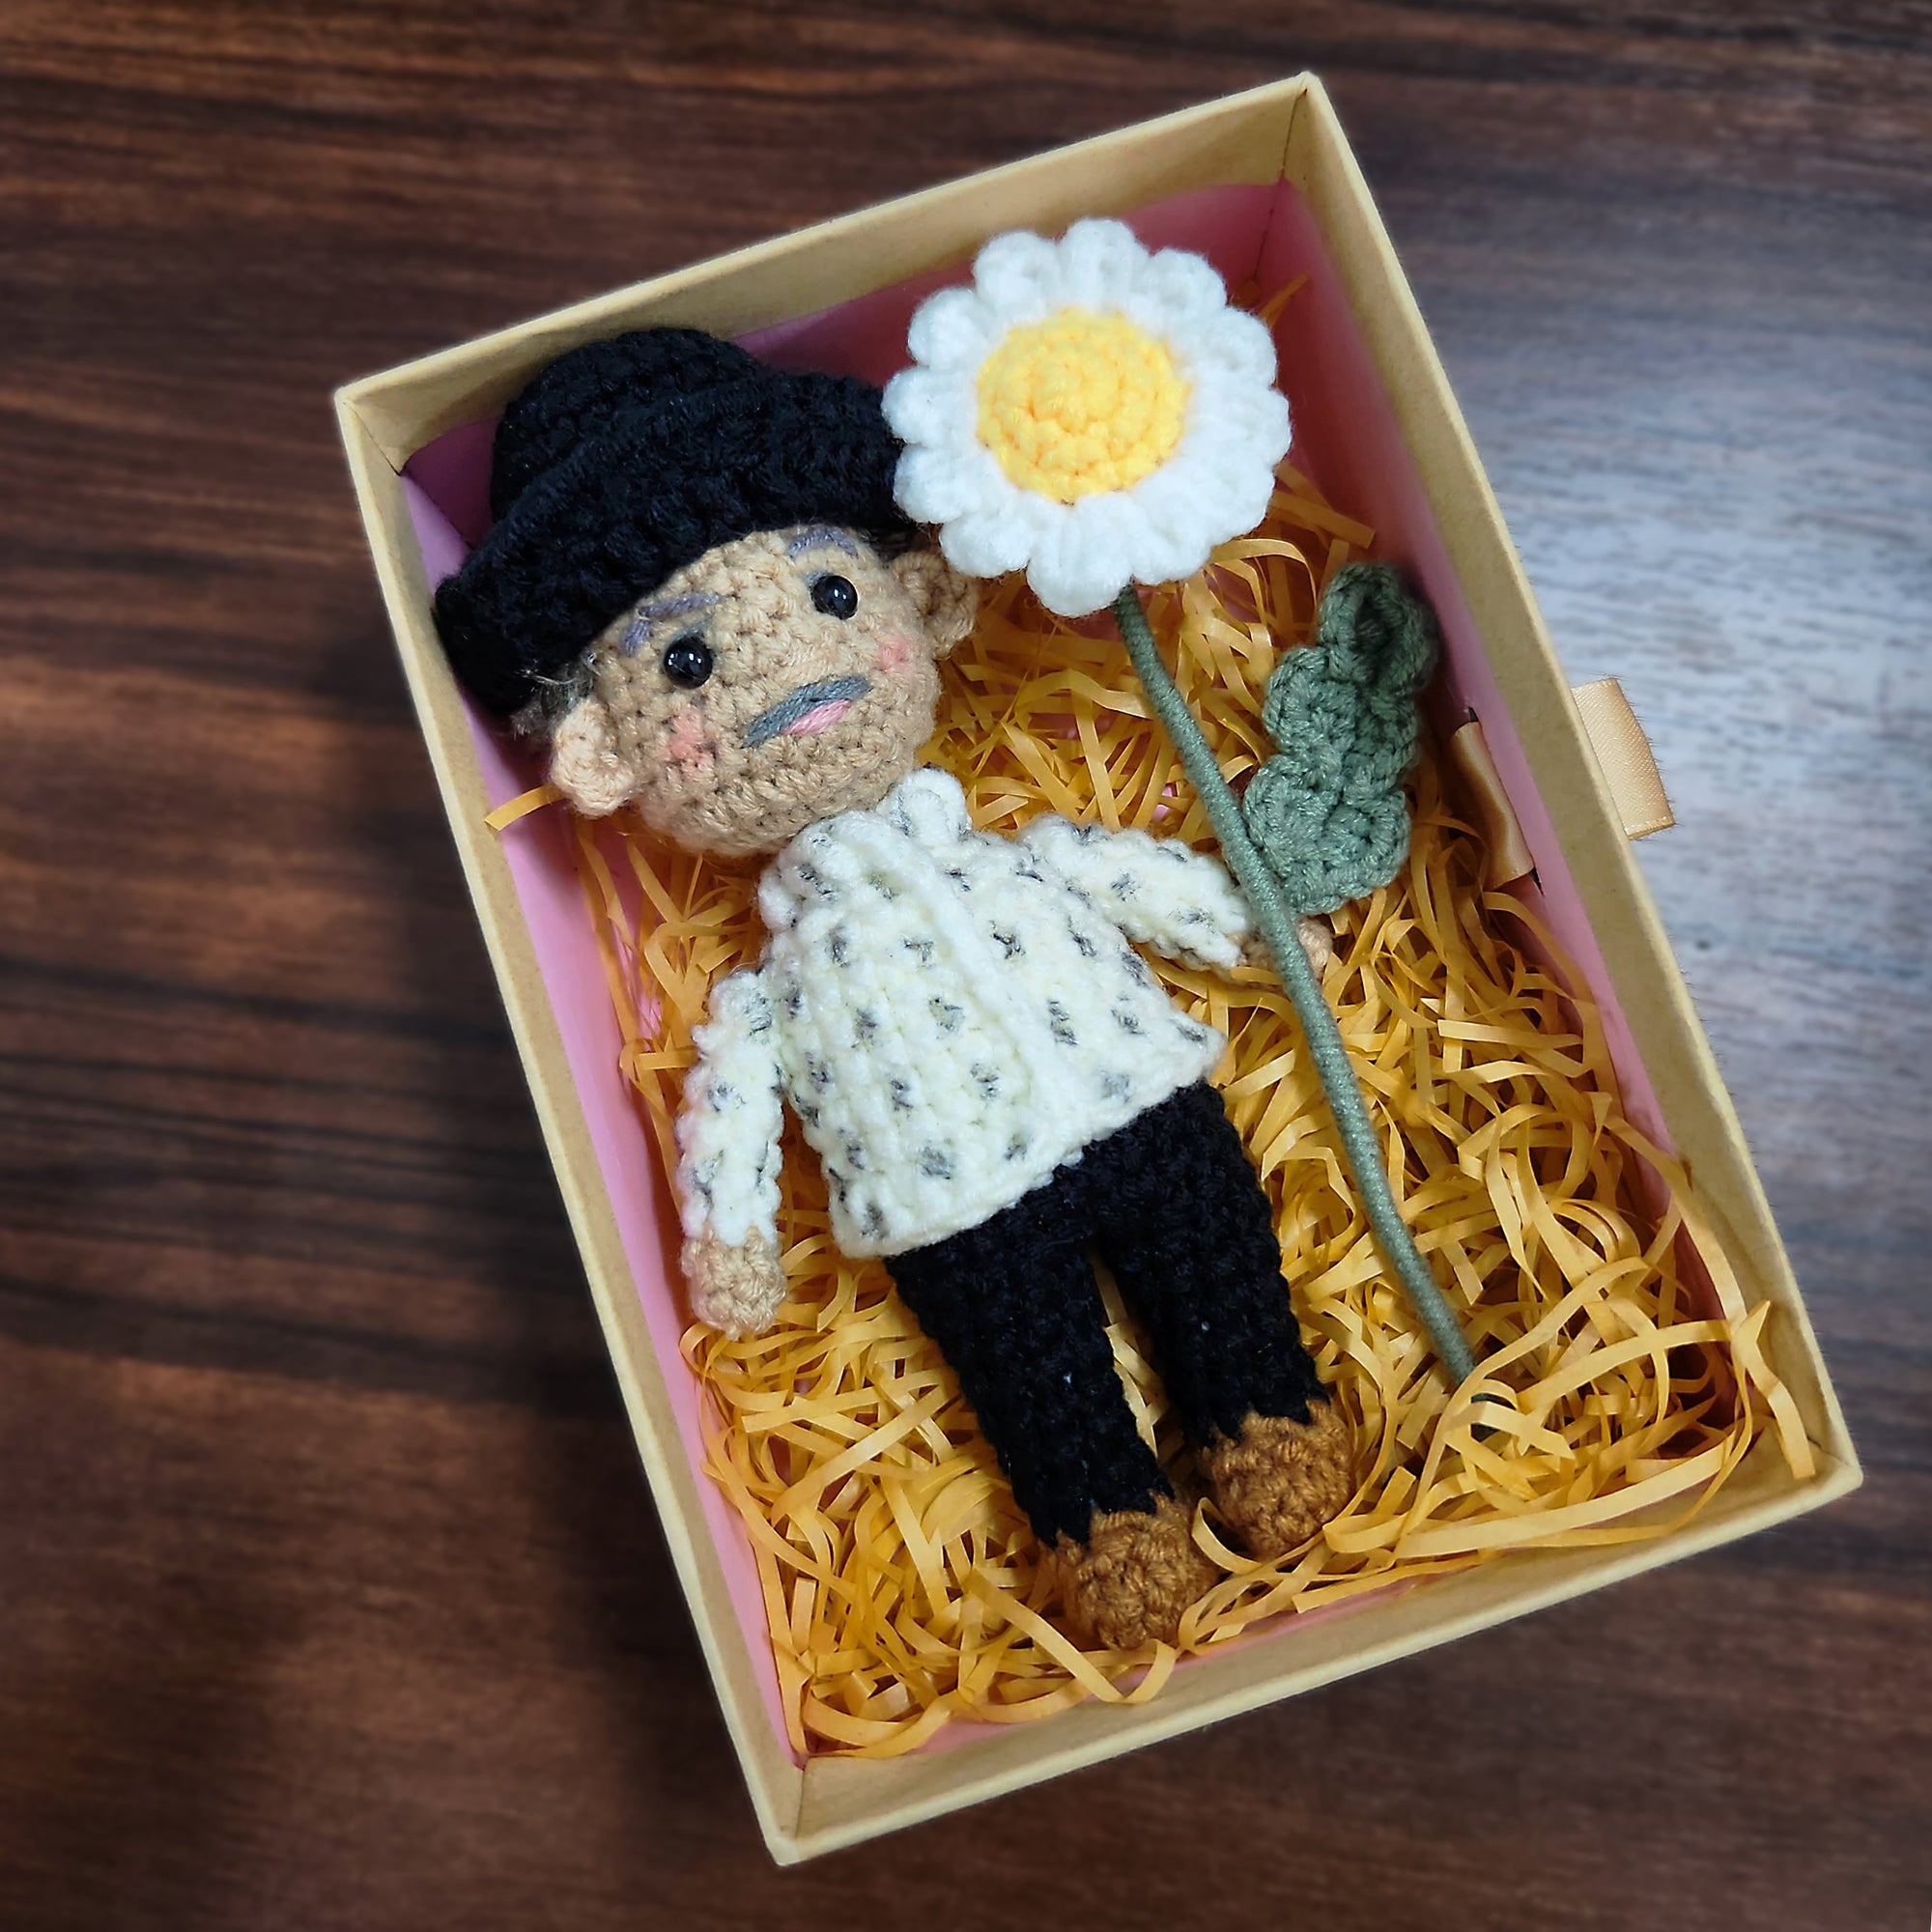 Shop Crochet Flower Kit online